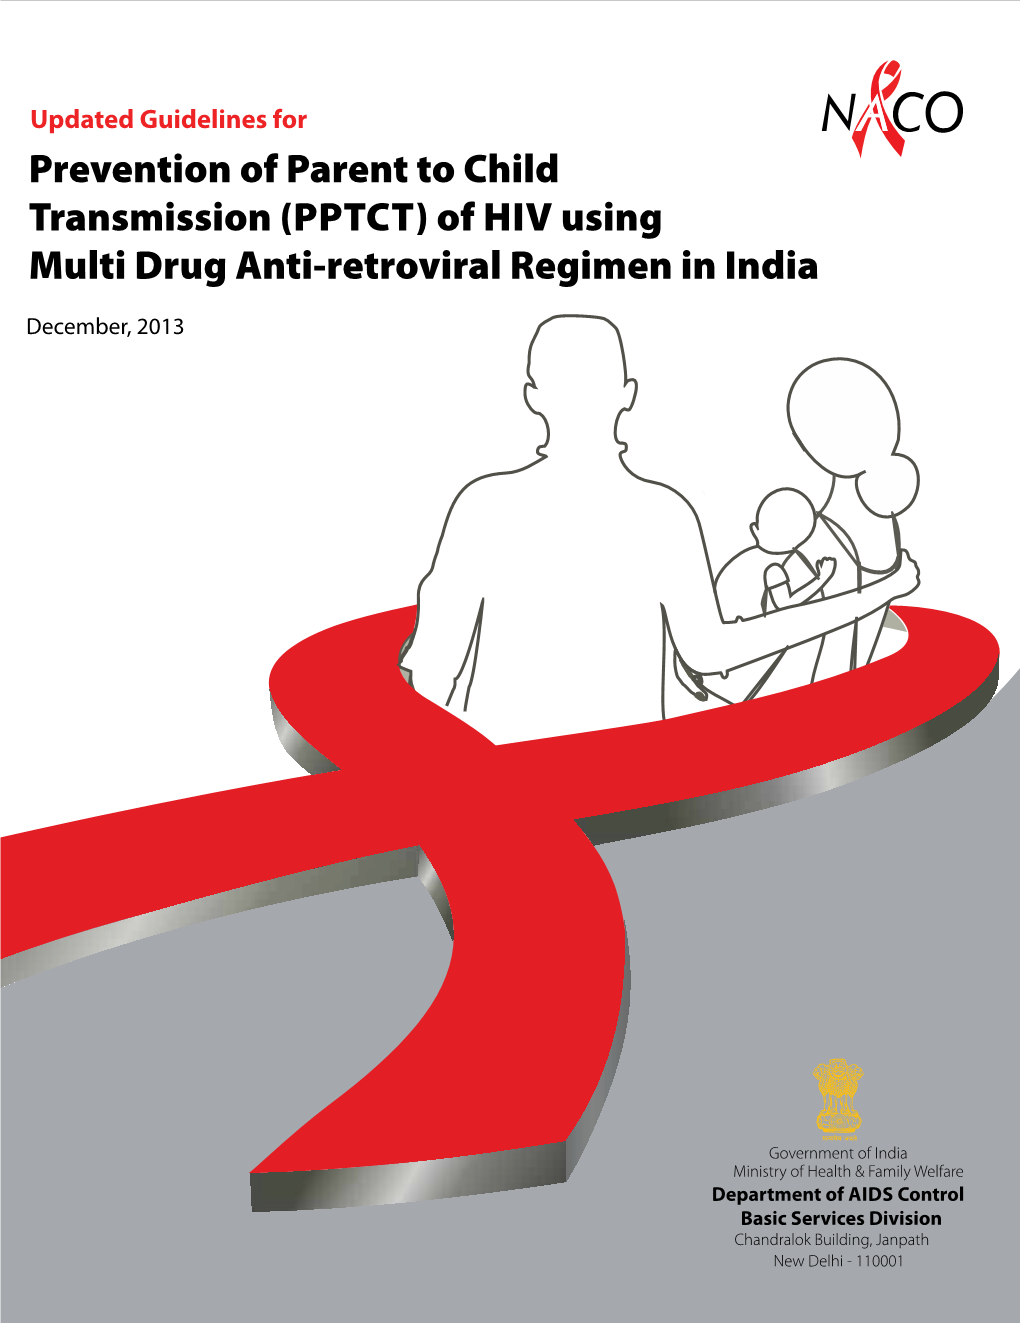 (PPTCT) of HIV Using Multi Drug Anti-Retroviral Regimen in India